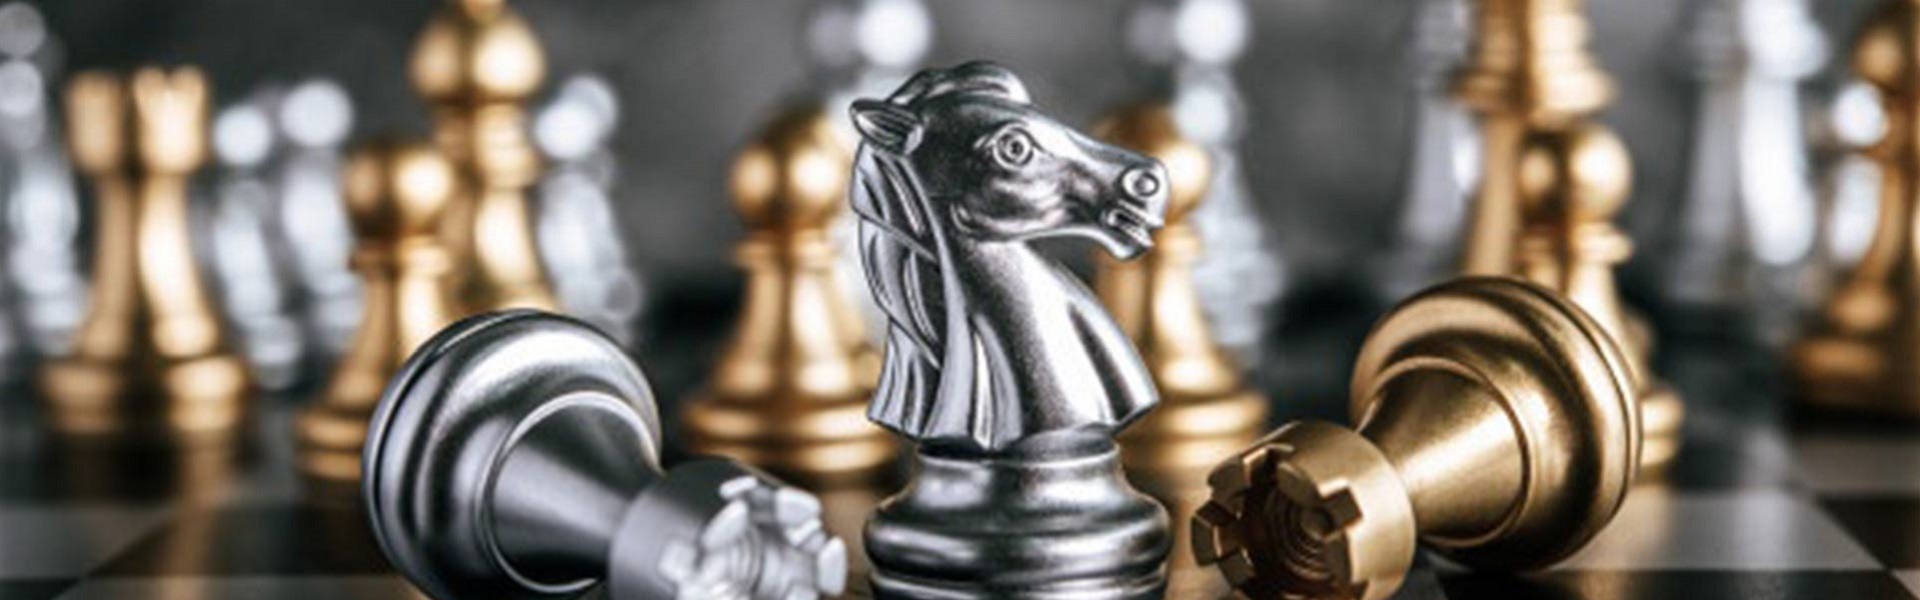 Rent a car Crna Gora |  Chess lessons Dubai & New York